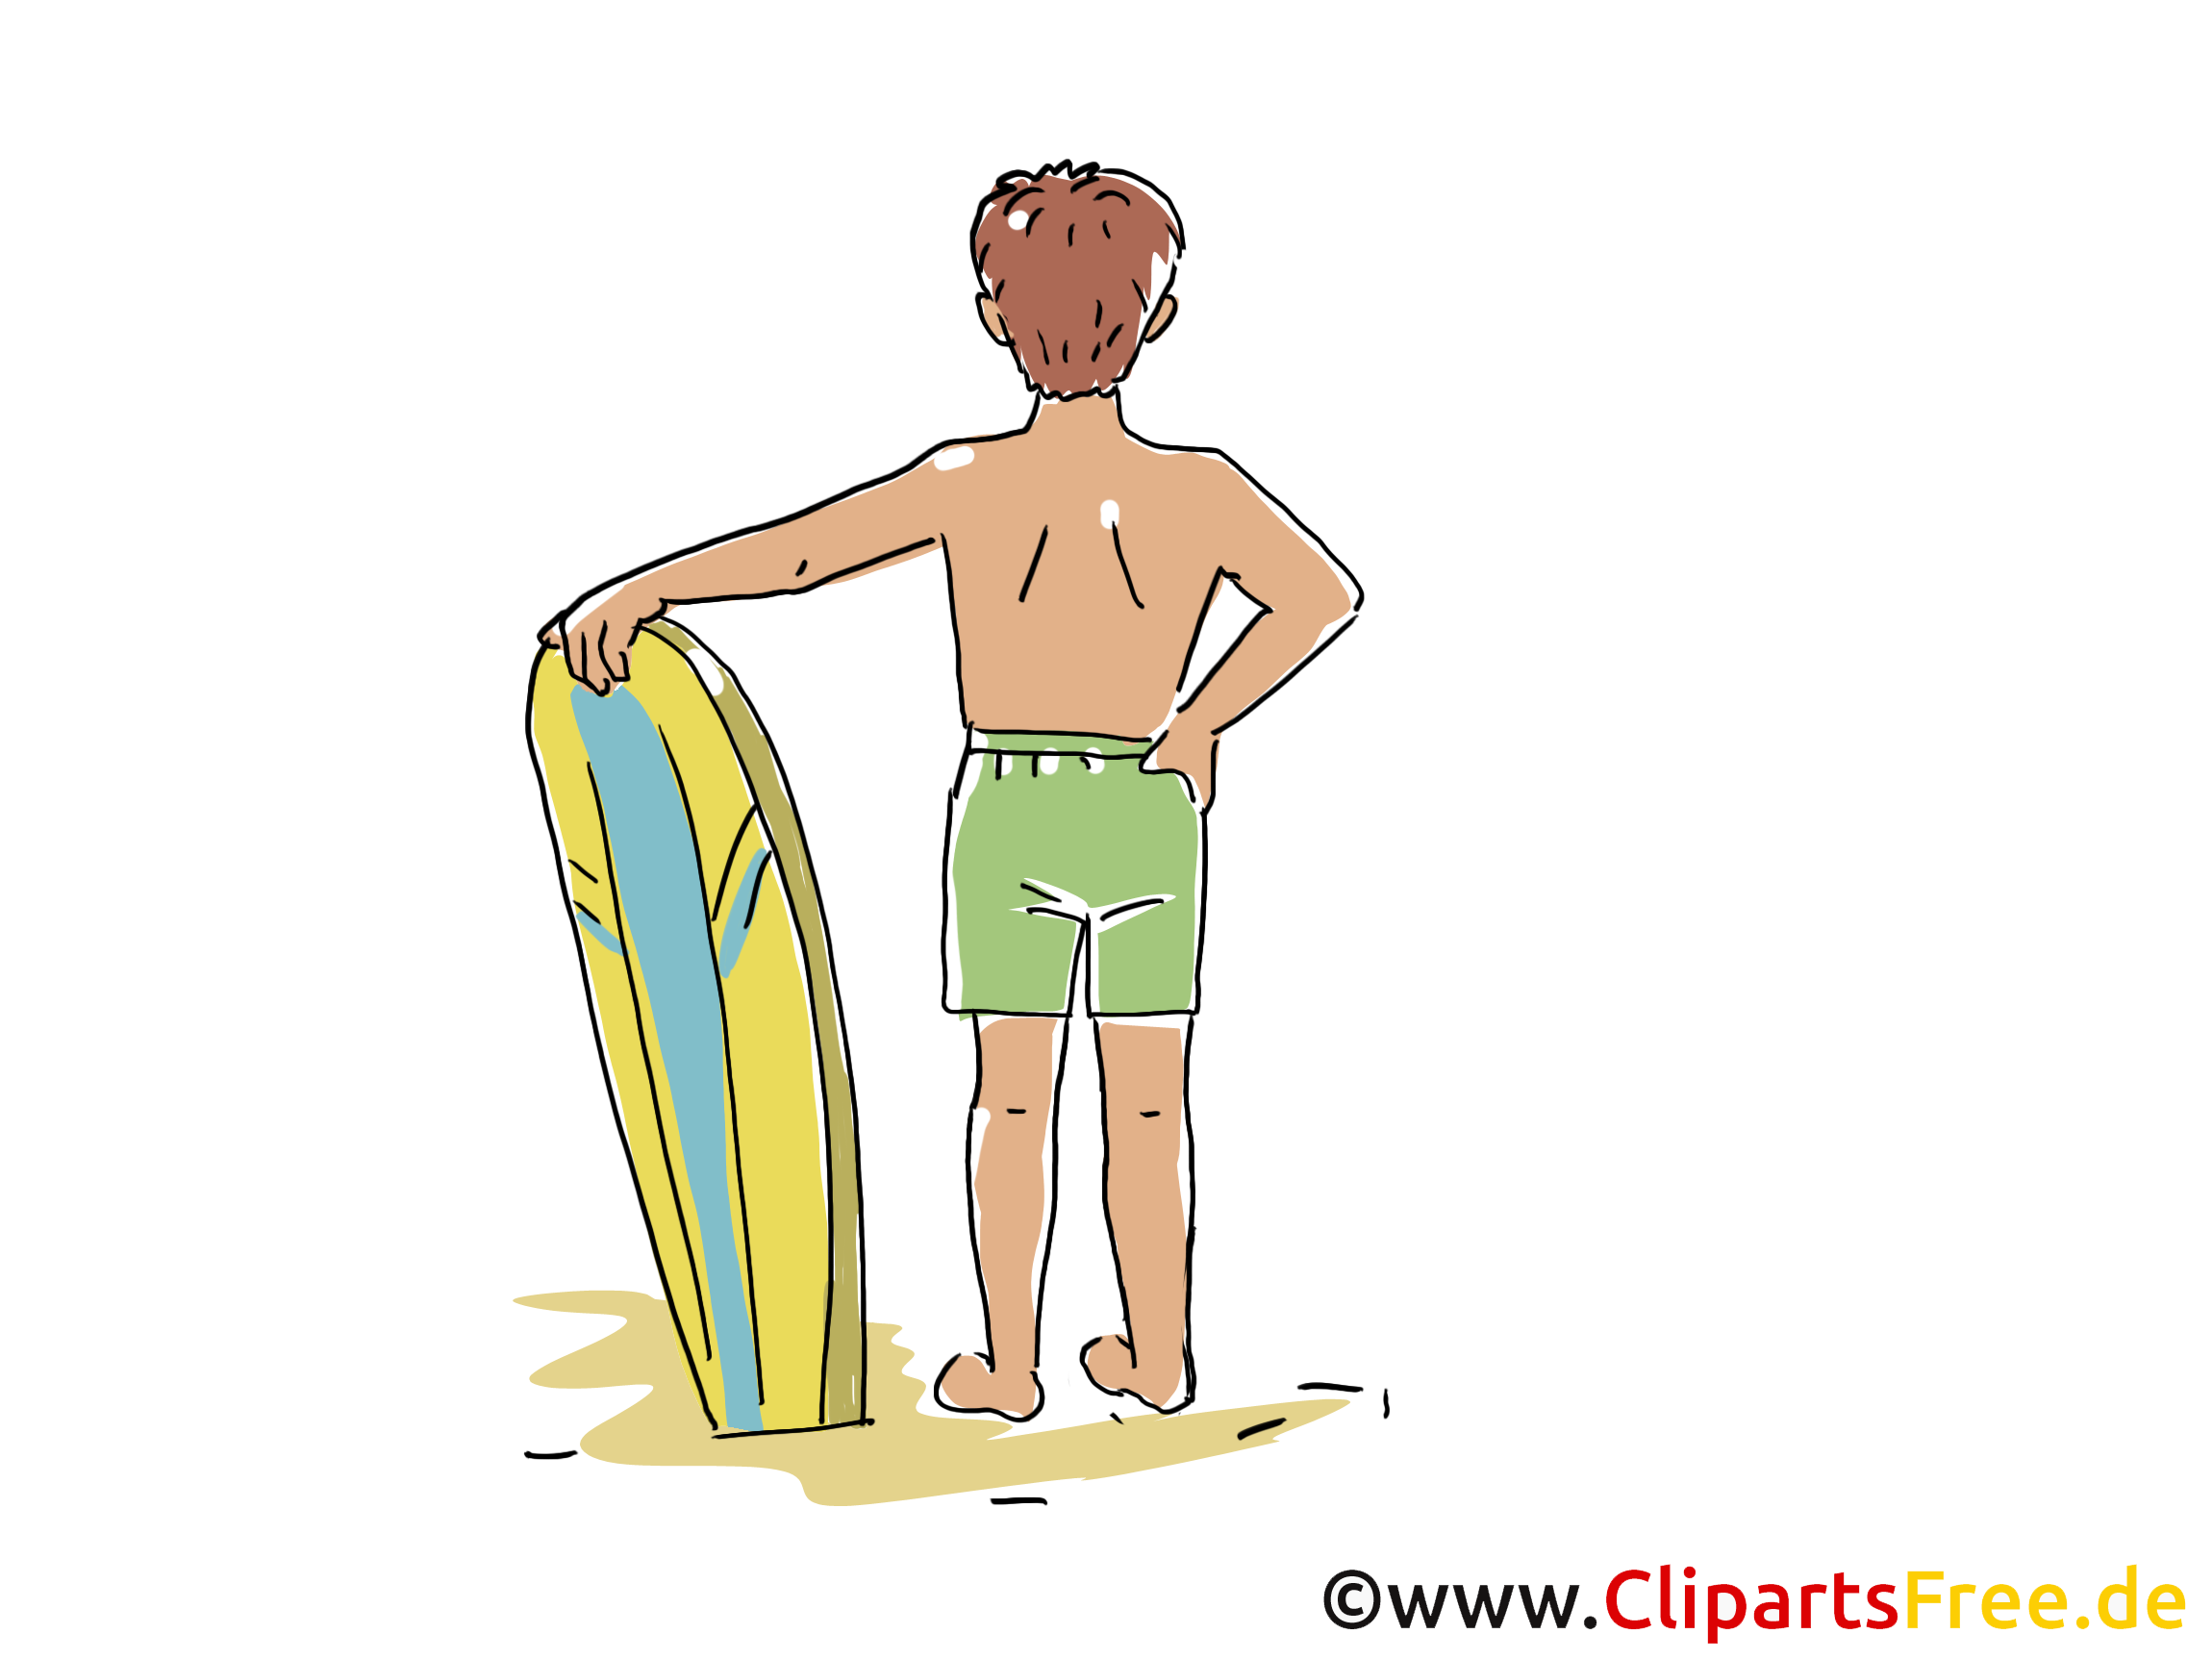 Surf image gratuite - Loisir cliparts